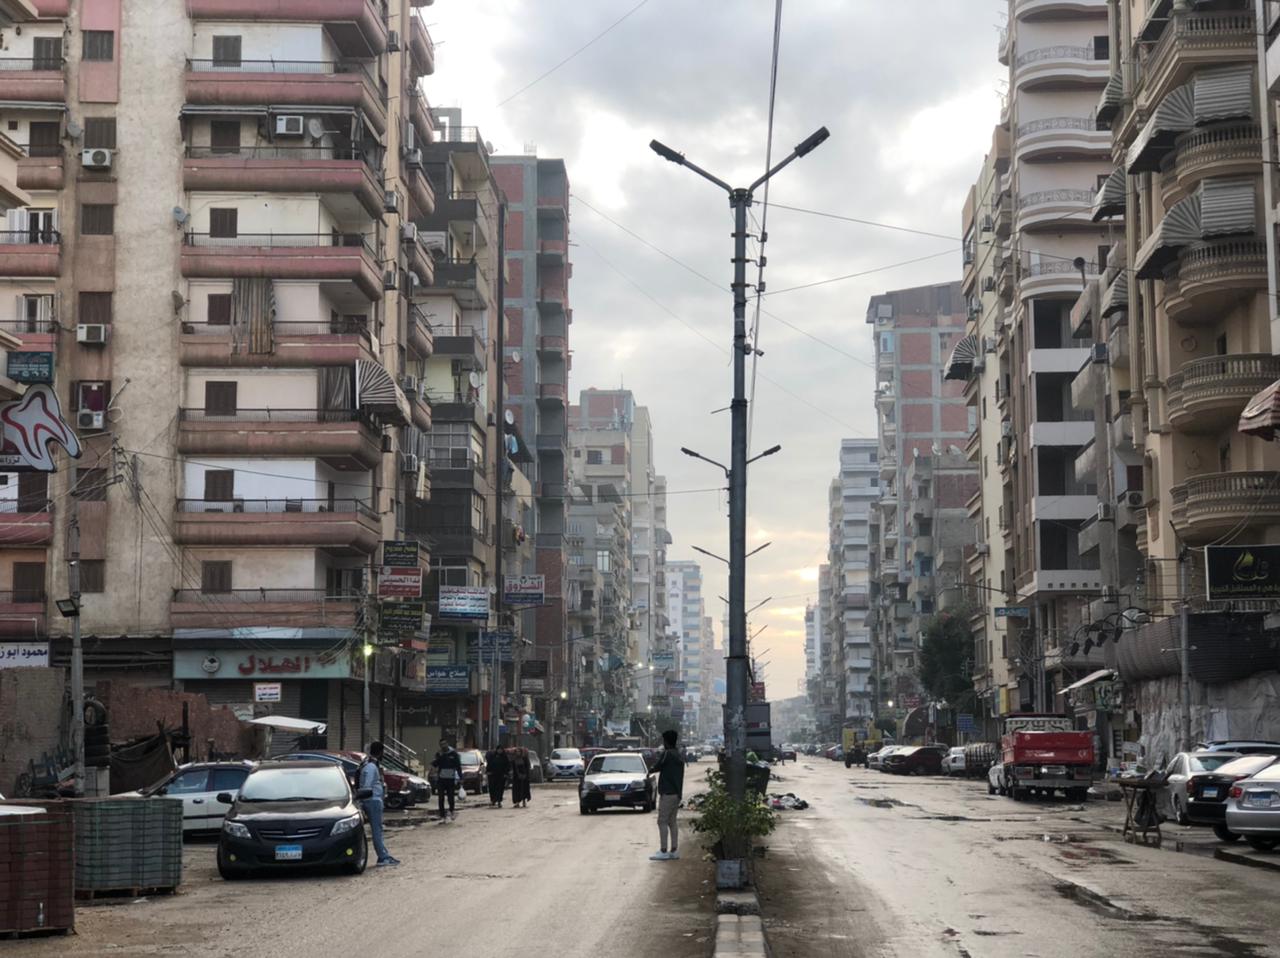 شوارع مدينة المنصورة تشهد سقوط أمطار متوسطة